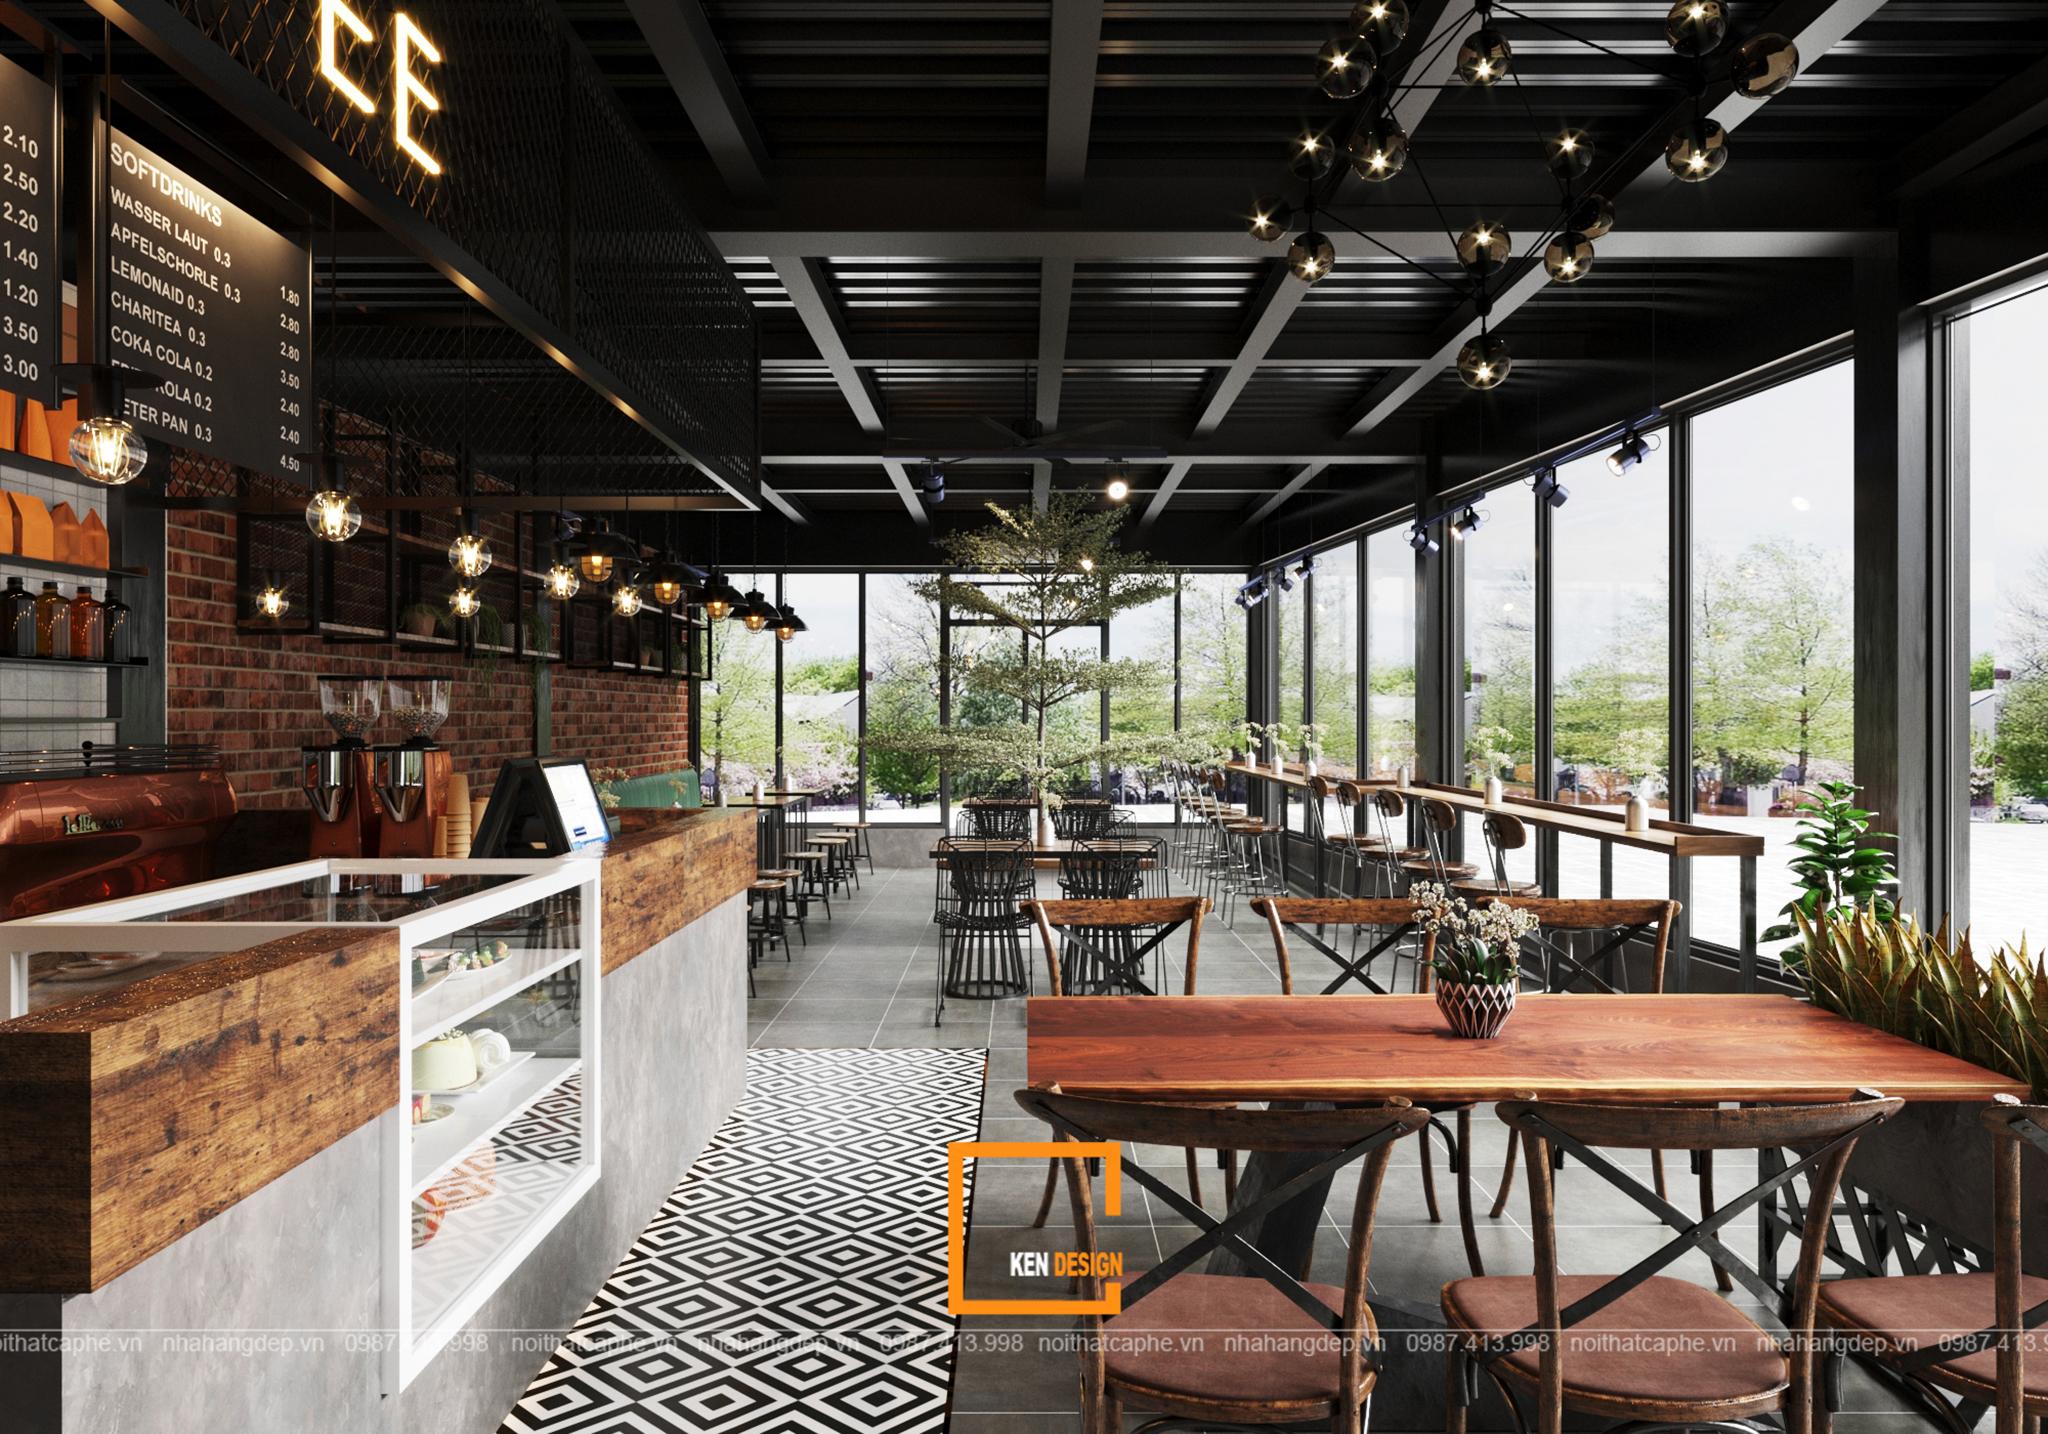 Thiết kế quán cafe là một trong những lĩnh vực thiết kế nội thất hot nhất hiện nay. Thông qua các dự án thiết kế quán cafe đượm chất riêng, chúng tôi sẽ giúp cho quán của bạn trở nên độc đáo và thu hút nhiều khách hàng hơn. Đến với chúng tôi và trải nghiệm những giải pháp thiết kế quán cafe tuyệt vời nhất.